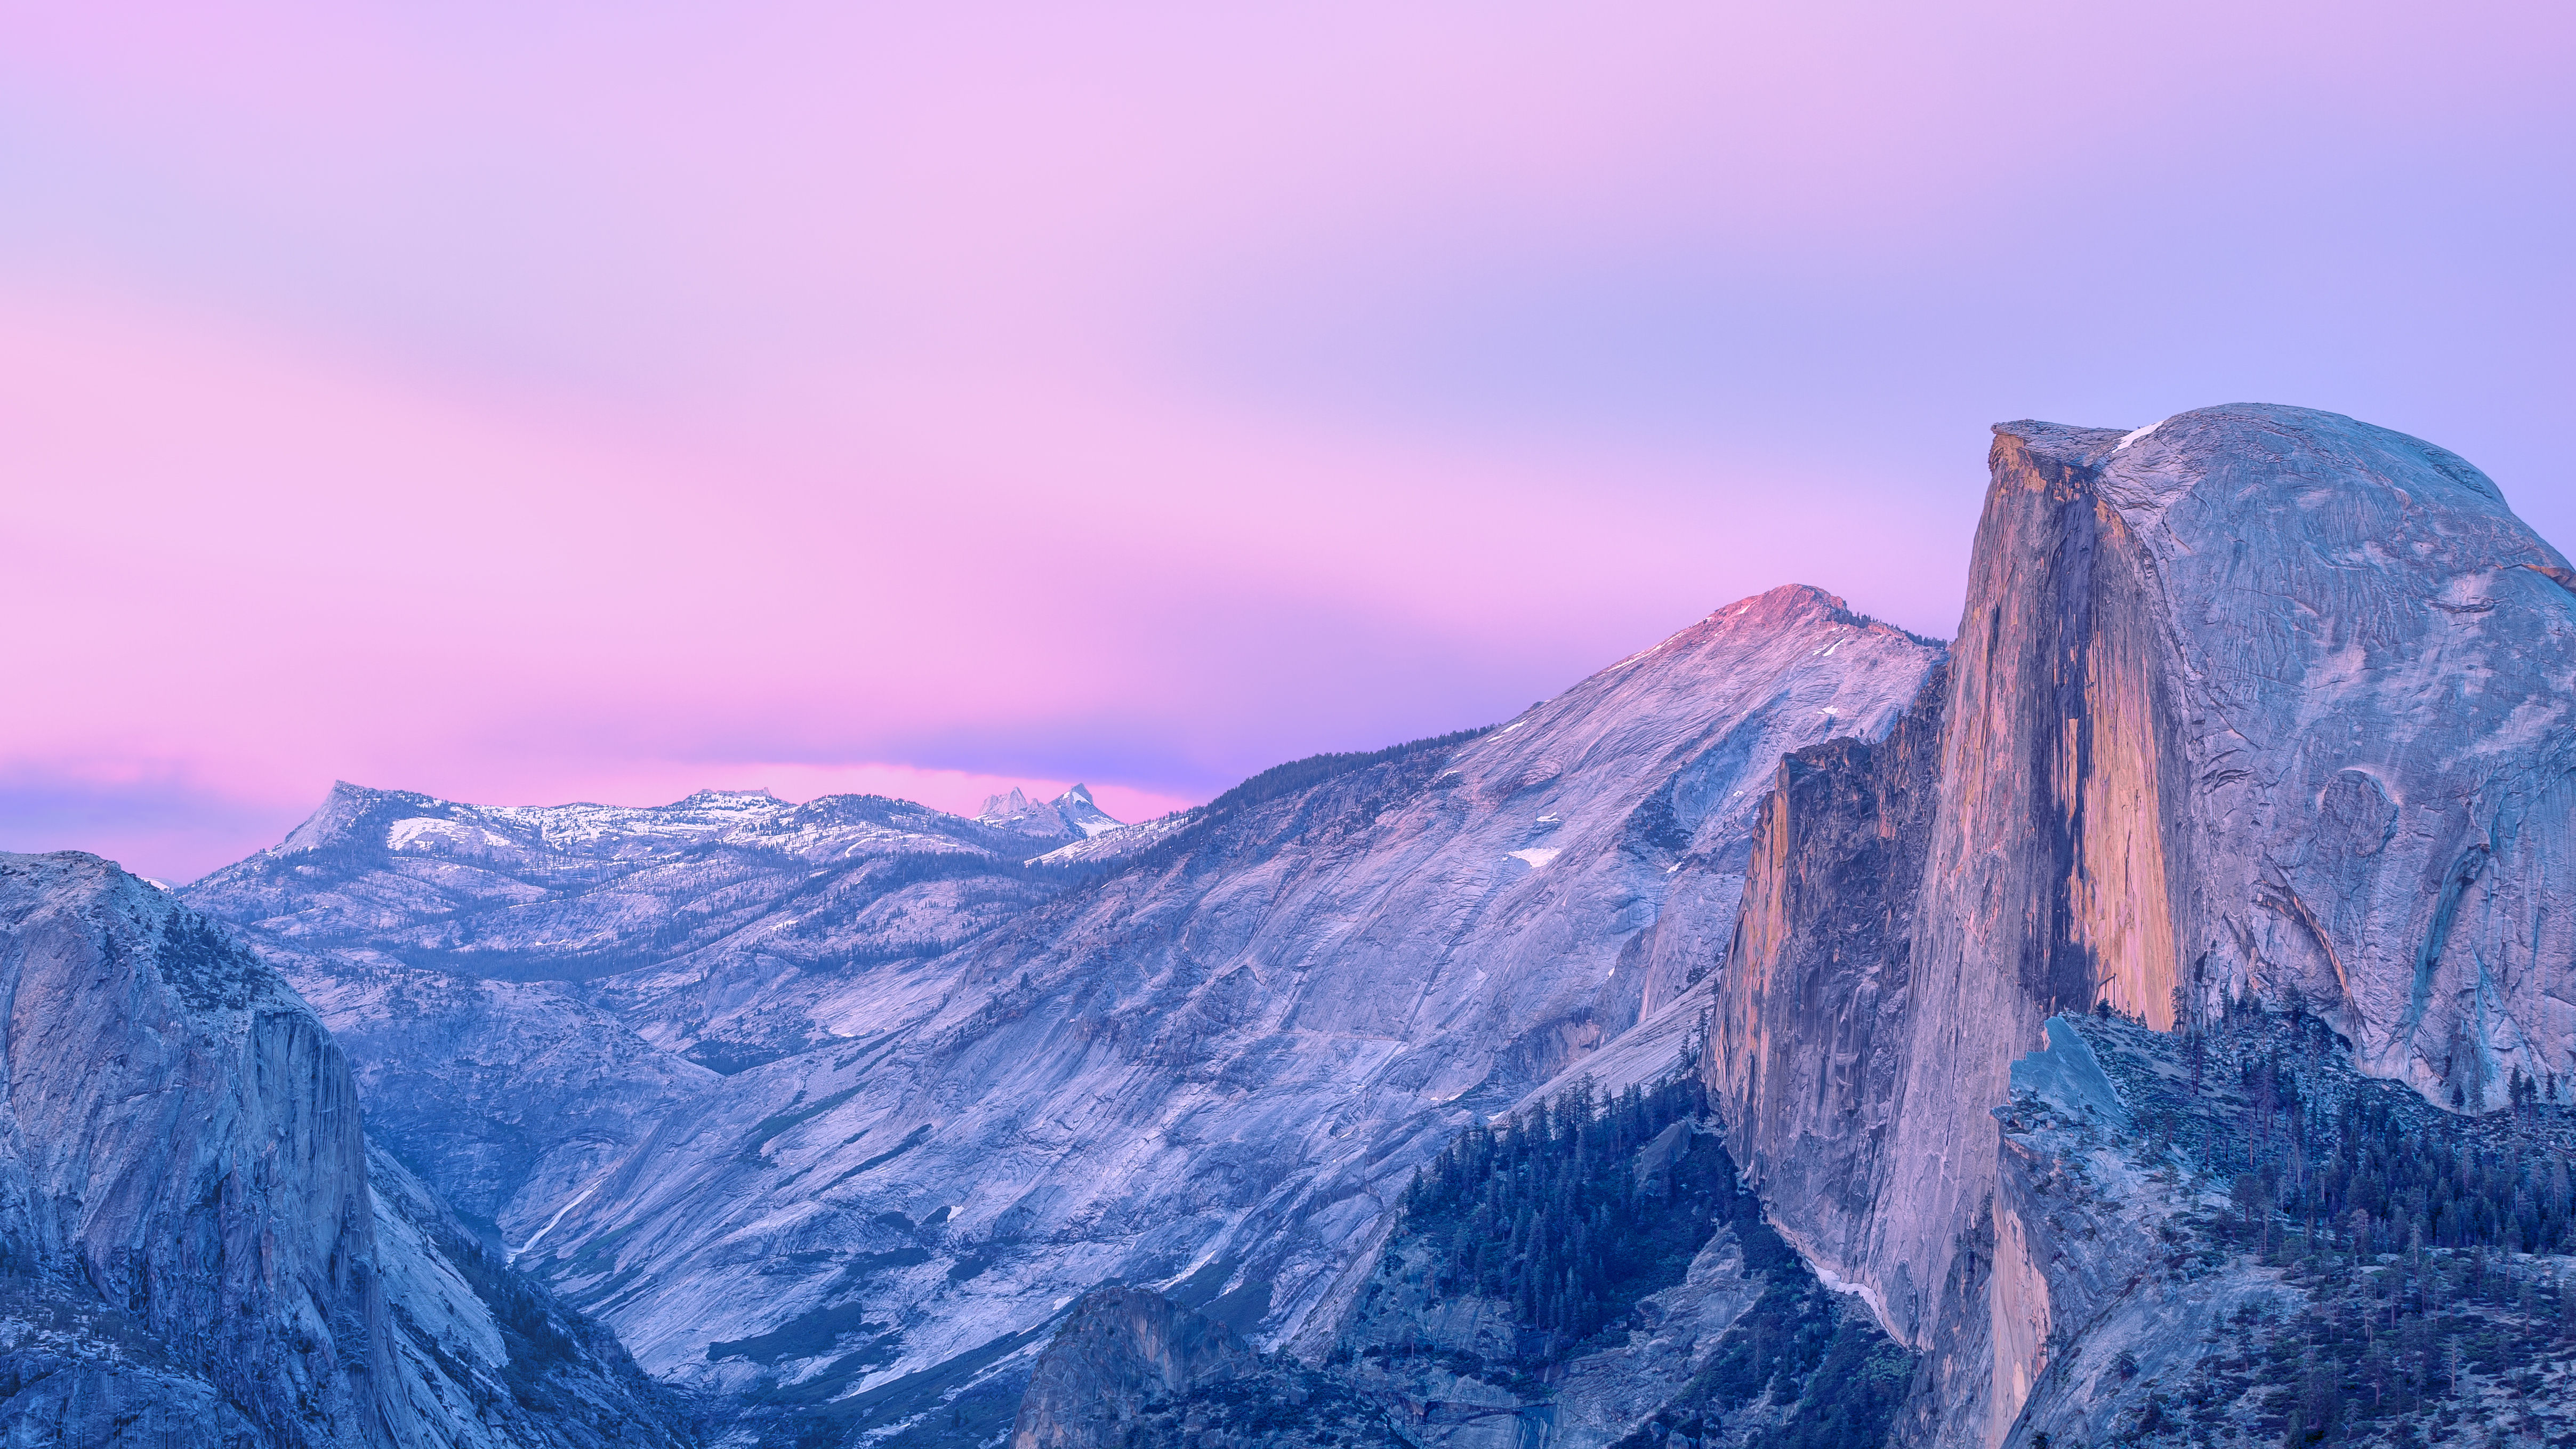 Hình nền OS X Yosemite Wallpaper đầy sự tinh tế và hoàn thiện. Với những đường nét thiết kế đơn giản nhưng thu hút, chắc chắn sẽ làm tin tưởng người dùng vào một trải nghiệm tốt nhất khi sử dụng máy tính của mình.